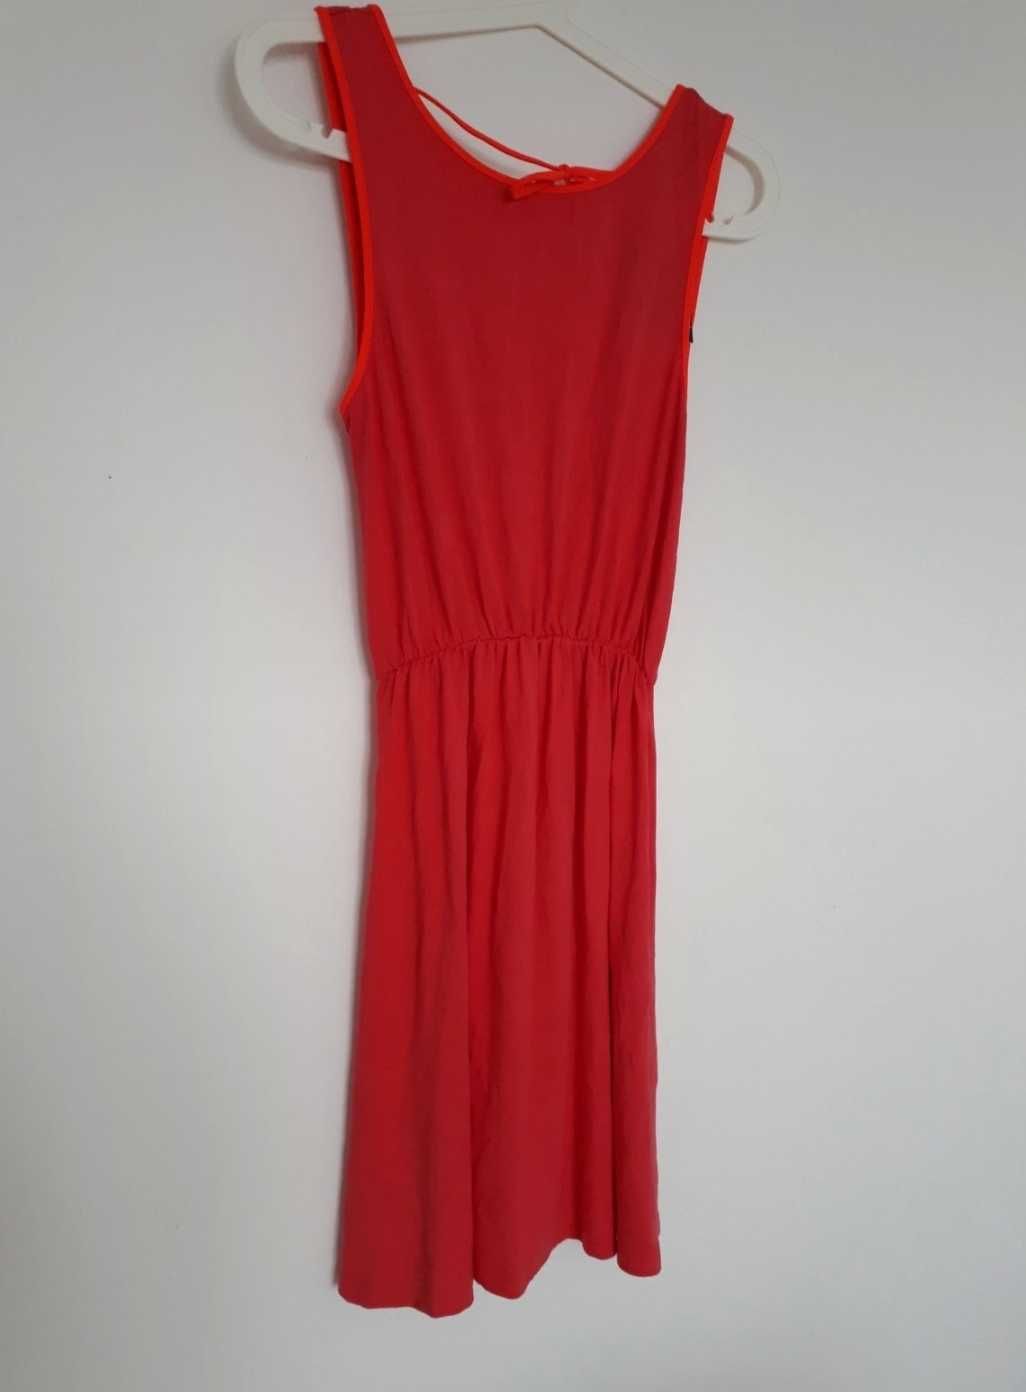 Nowa sukienka crazyword czerwona krotka plecy